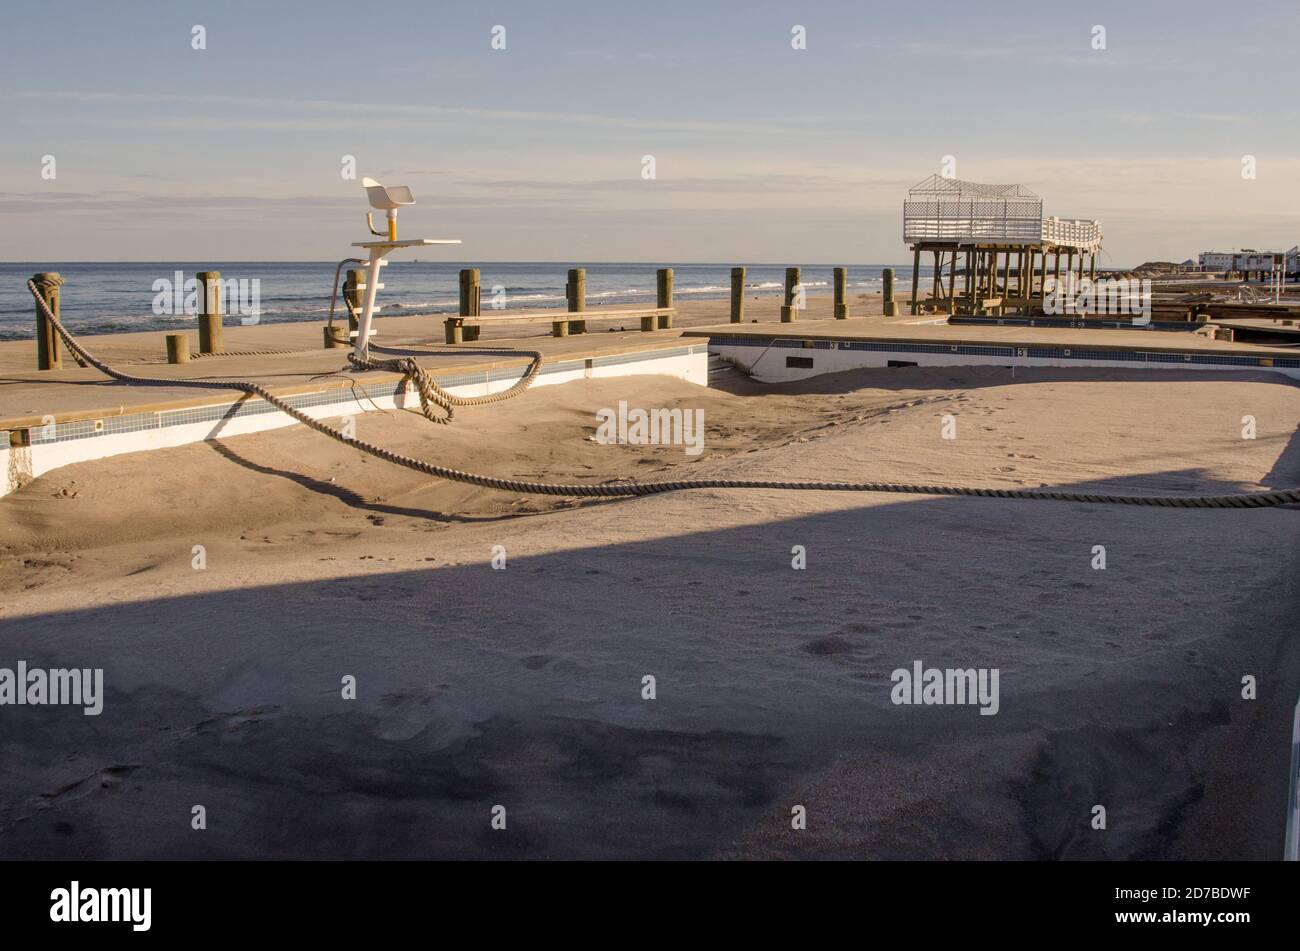 Una piscina del New Jersey è piena di sabbia dopo l'uragano Sandy. Colpo di sabbia il 29 ottobre 2012. Foto di Liz Roll Foto Stock